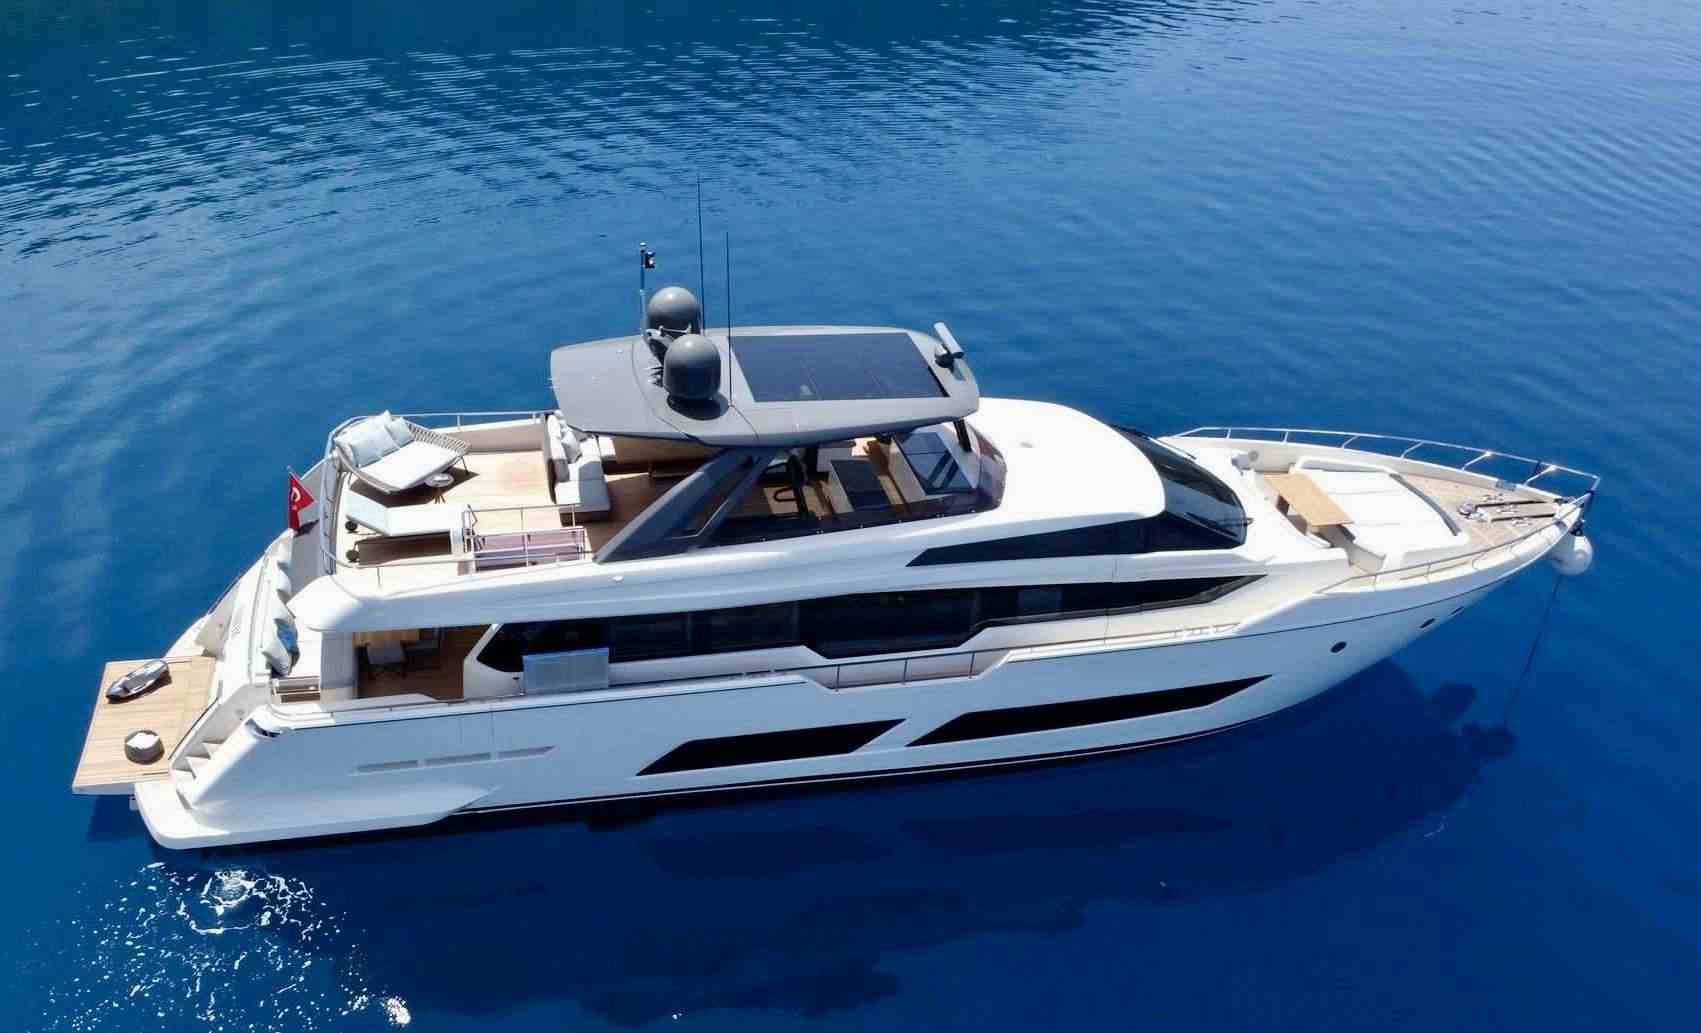 SHERO - Yacht Charter Fethiye & Boat hire in Greece & Turkey 1